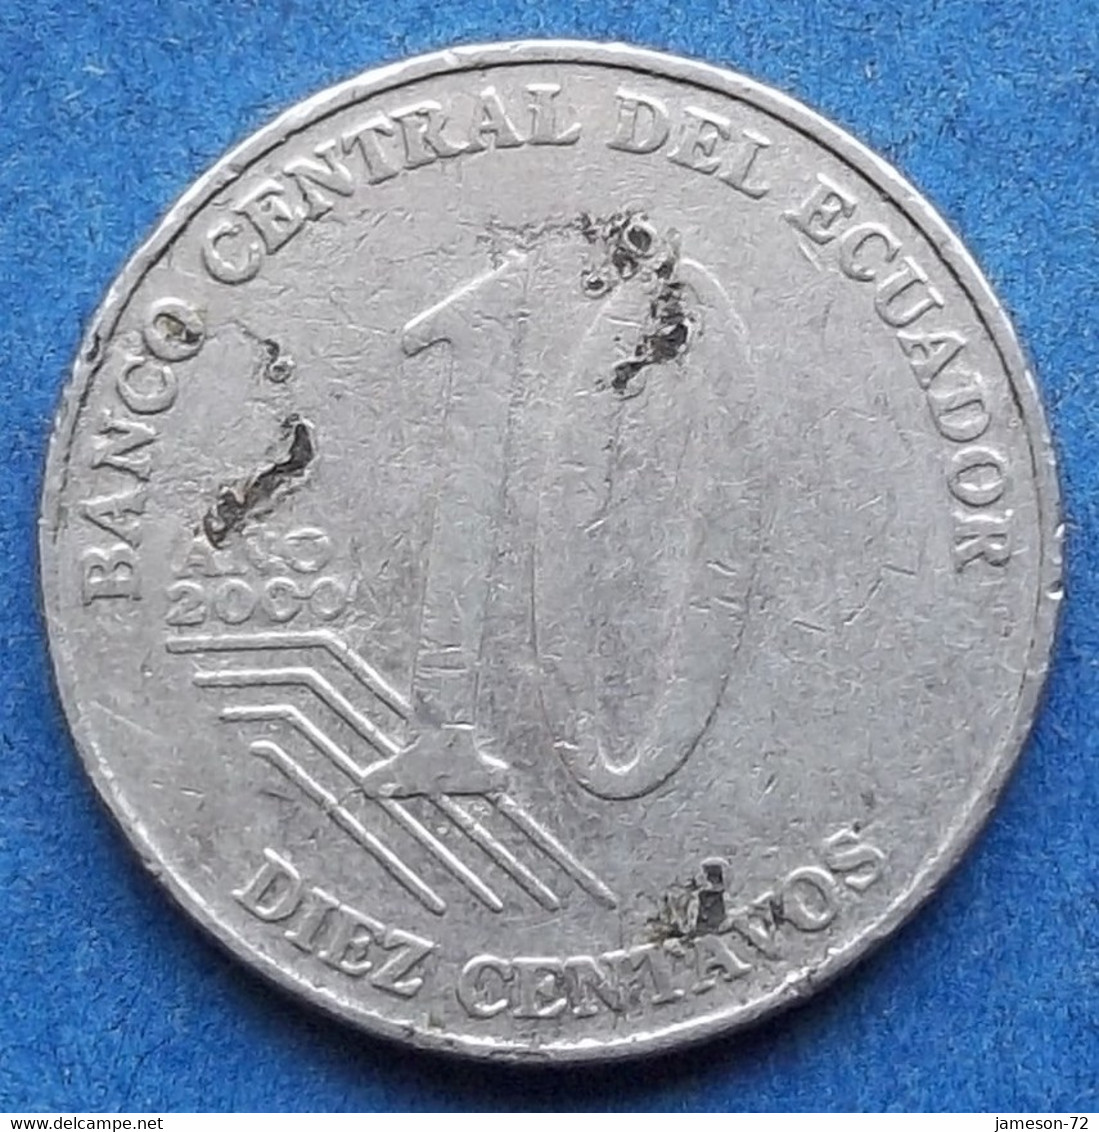 ECUADOR - 10 Centavos 2000 "Eugenio Espejo" KM# 106 Reform Coinage (2000) - Edelweiss Coins - Ecuador